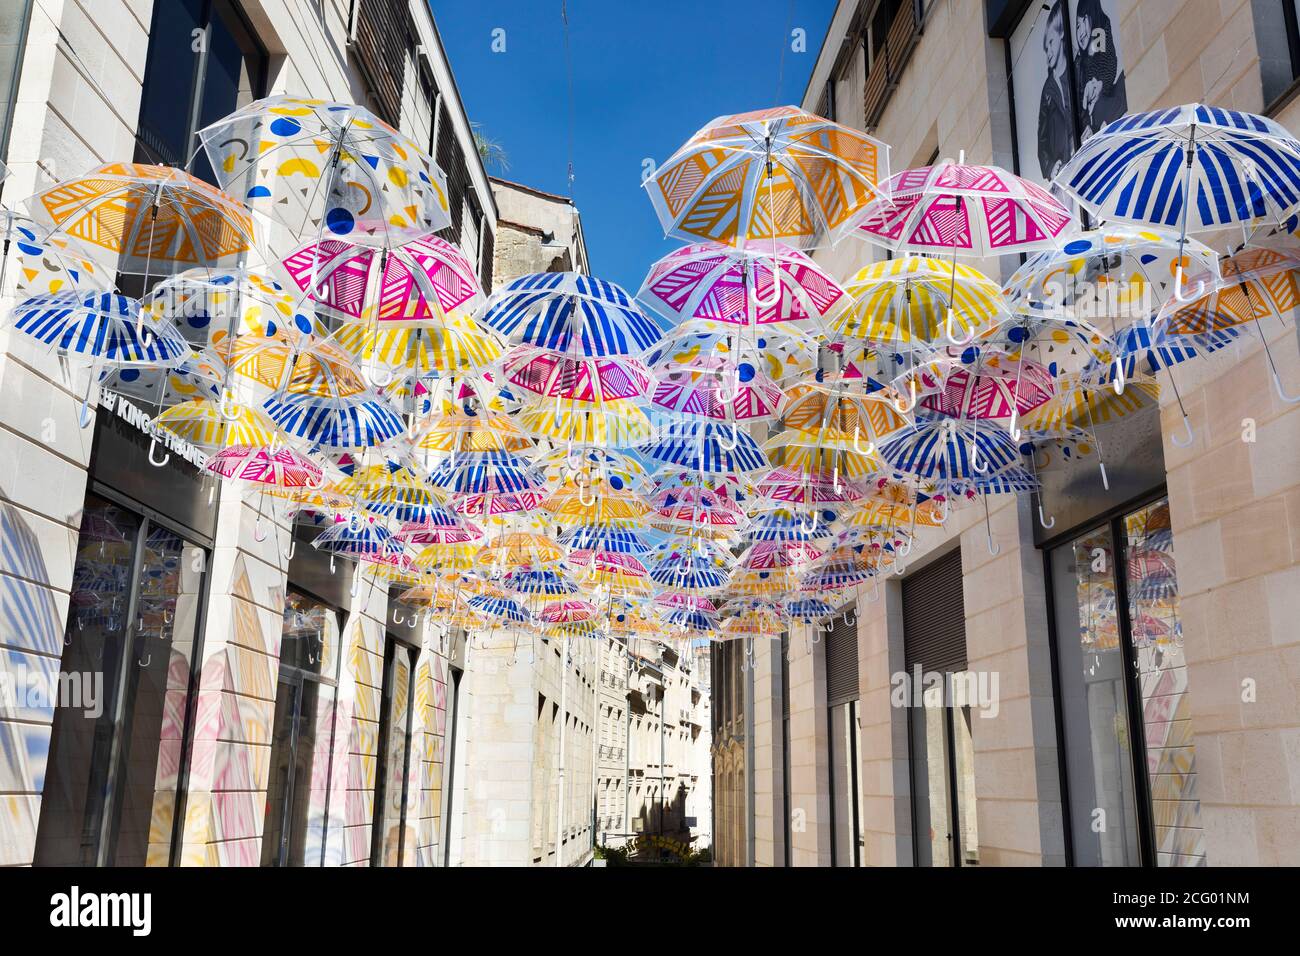 France, Gironde, Bordeaux, parapluie dans les rues de la ville Photo Stock  - Alamy